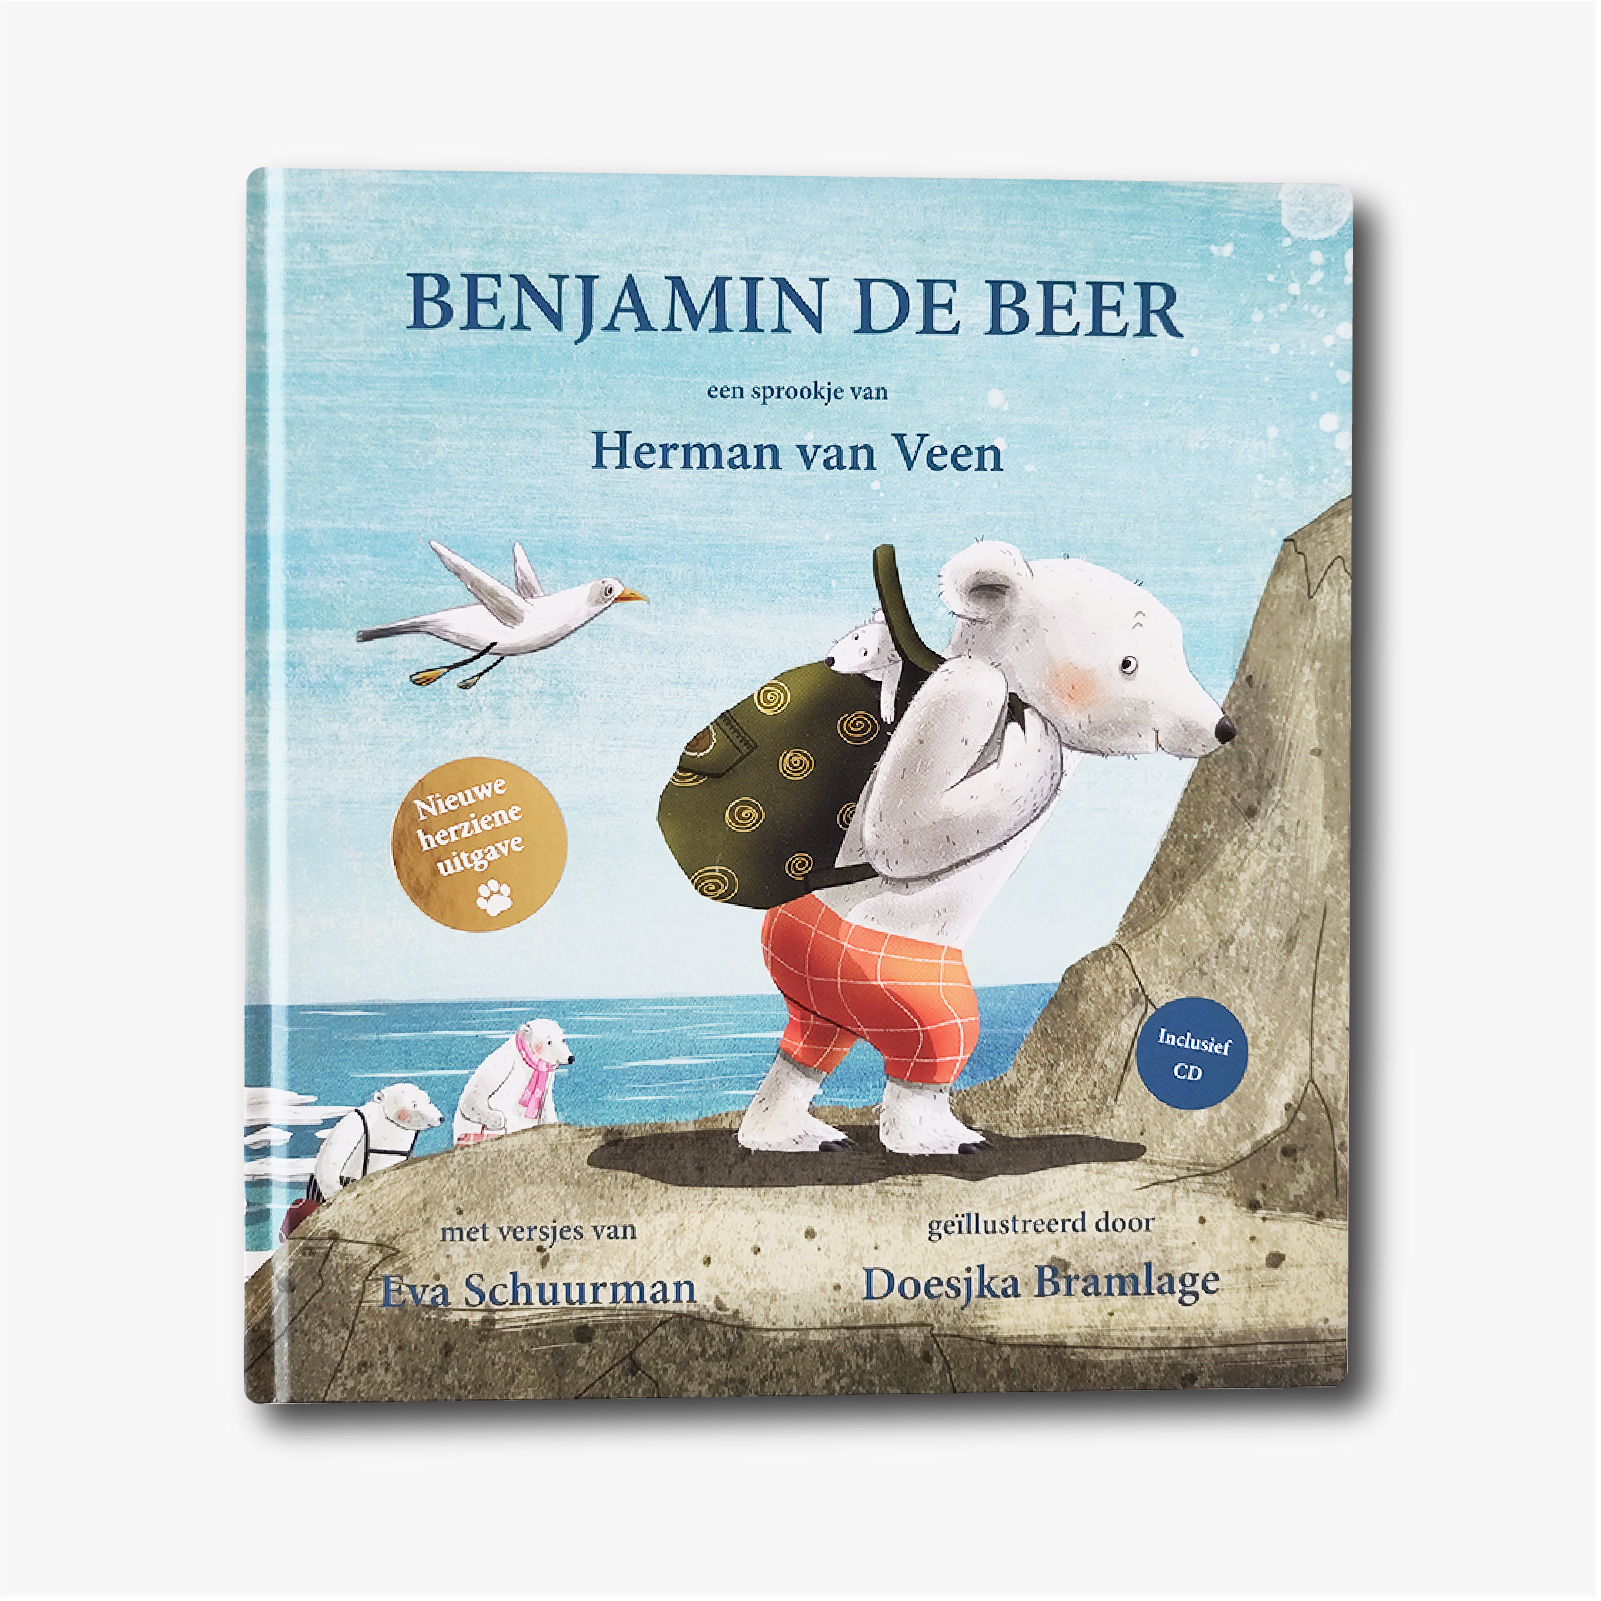 Boek Benjamin de Beer vernieuwde versie inclusief CD